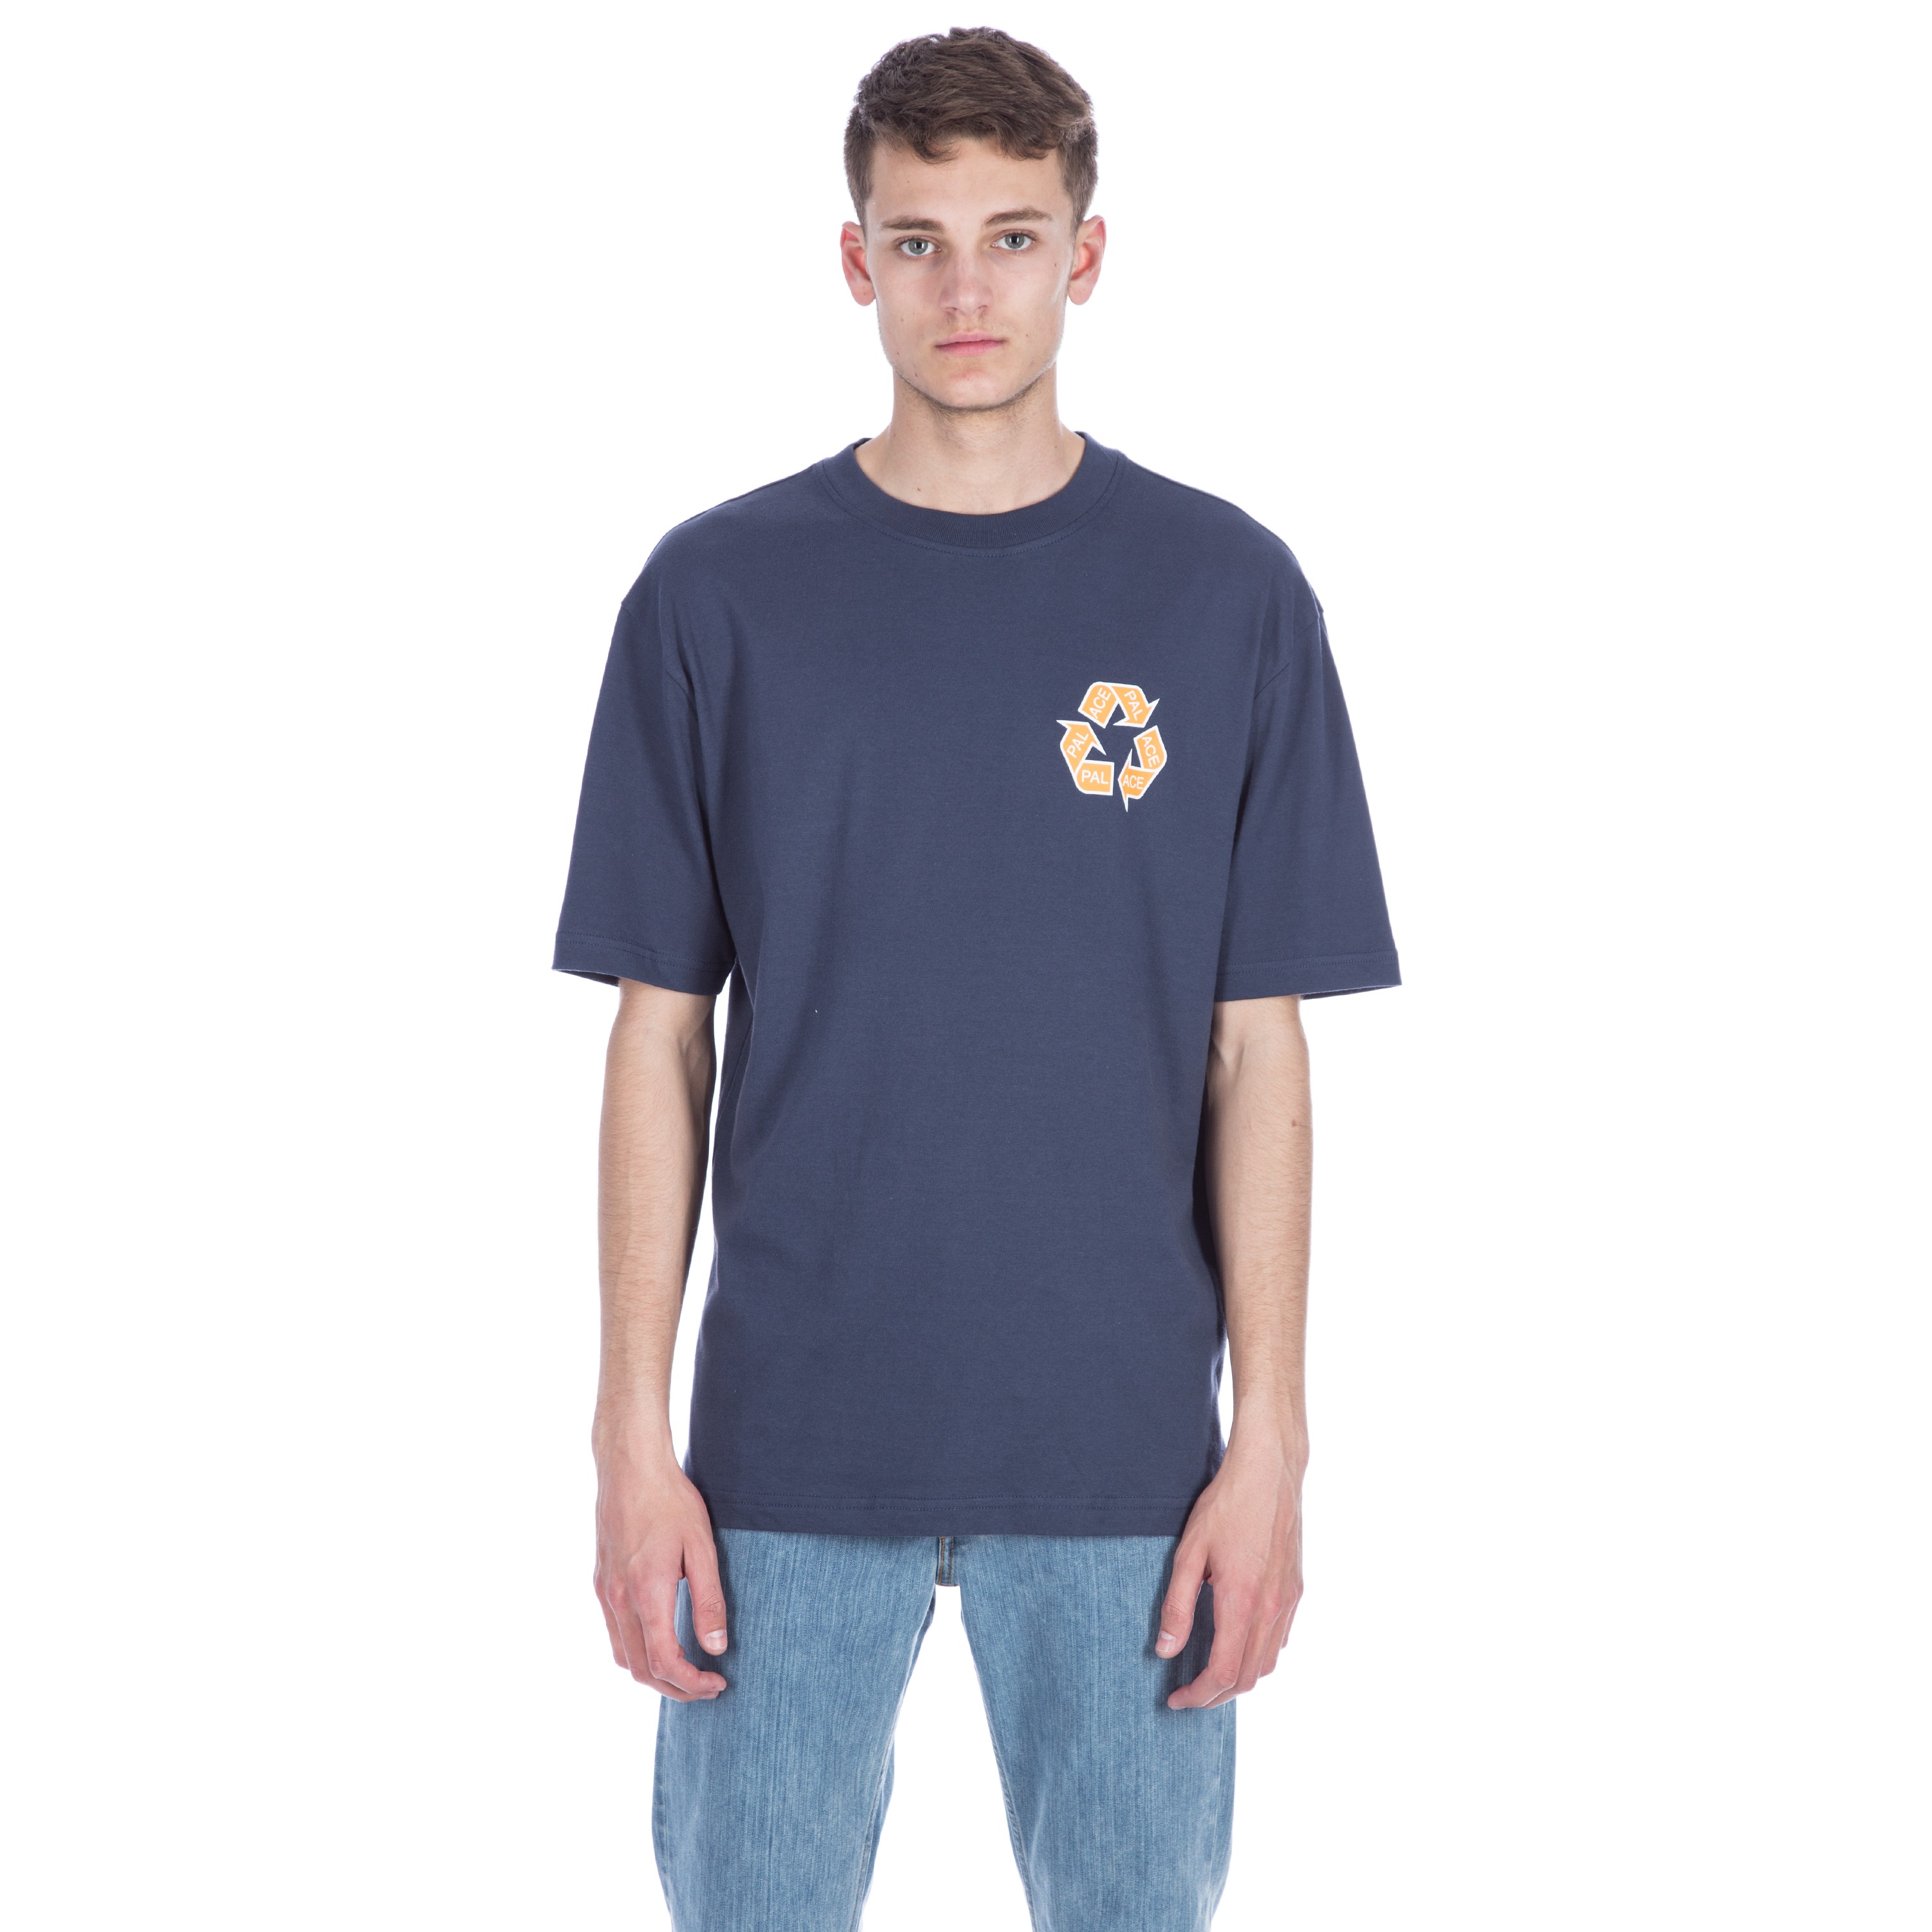 Palace P-Cycle T-Shirt (Navy) - Consortium.